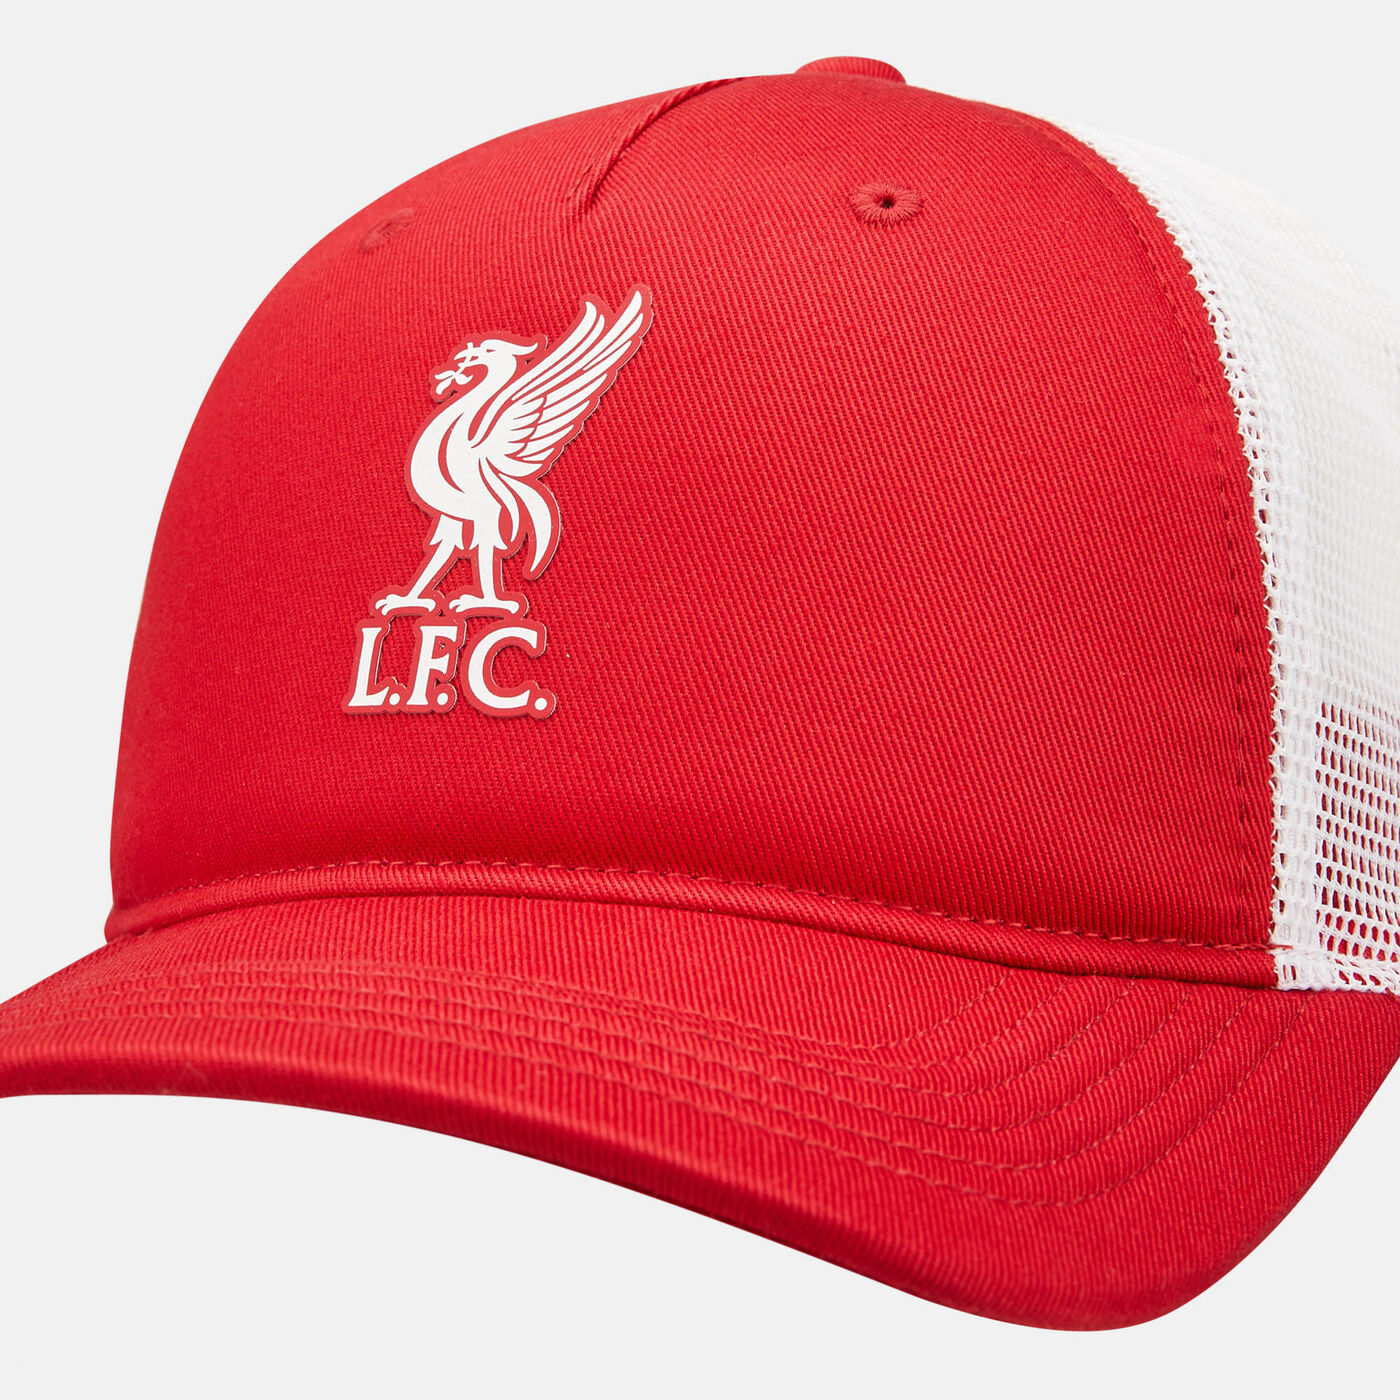 Men's Liverpool F.C. Trucker Cap